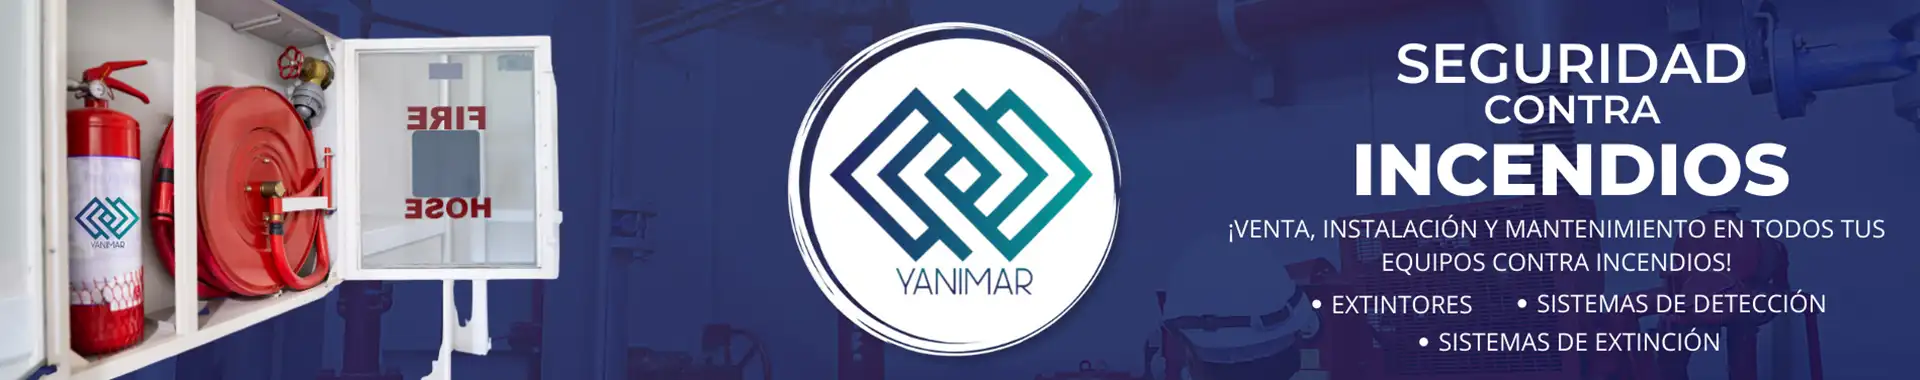 Imagen 2 del perfil de Seguridad Yanimar